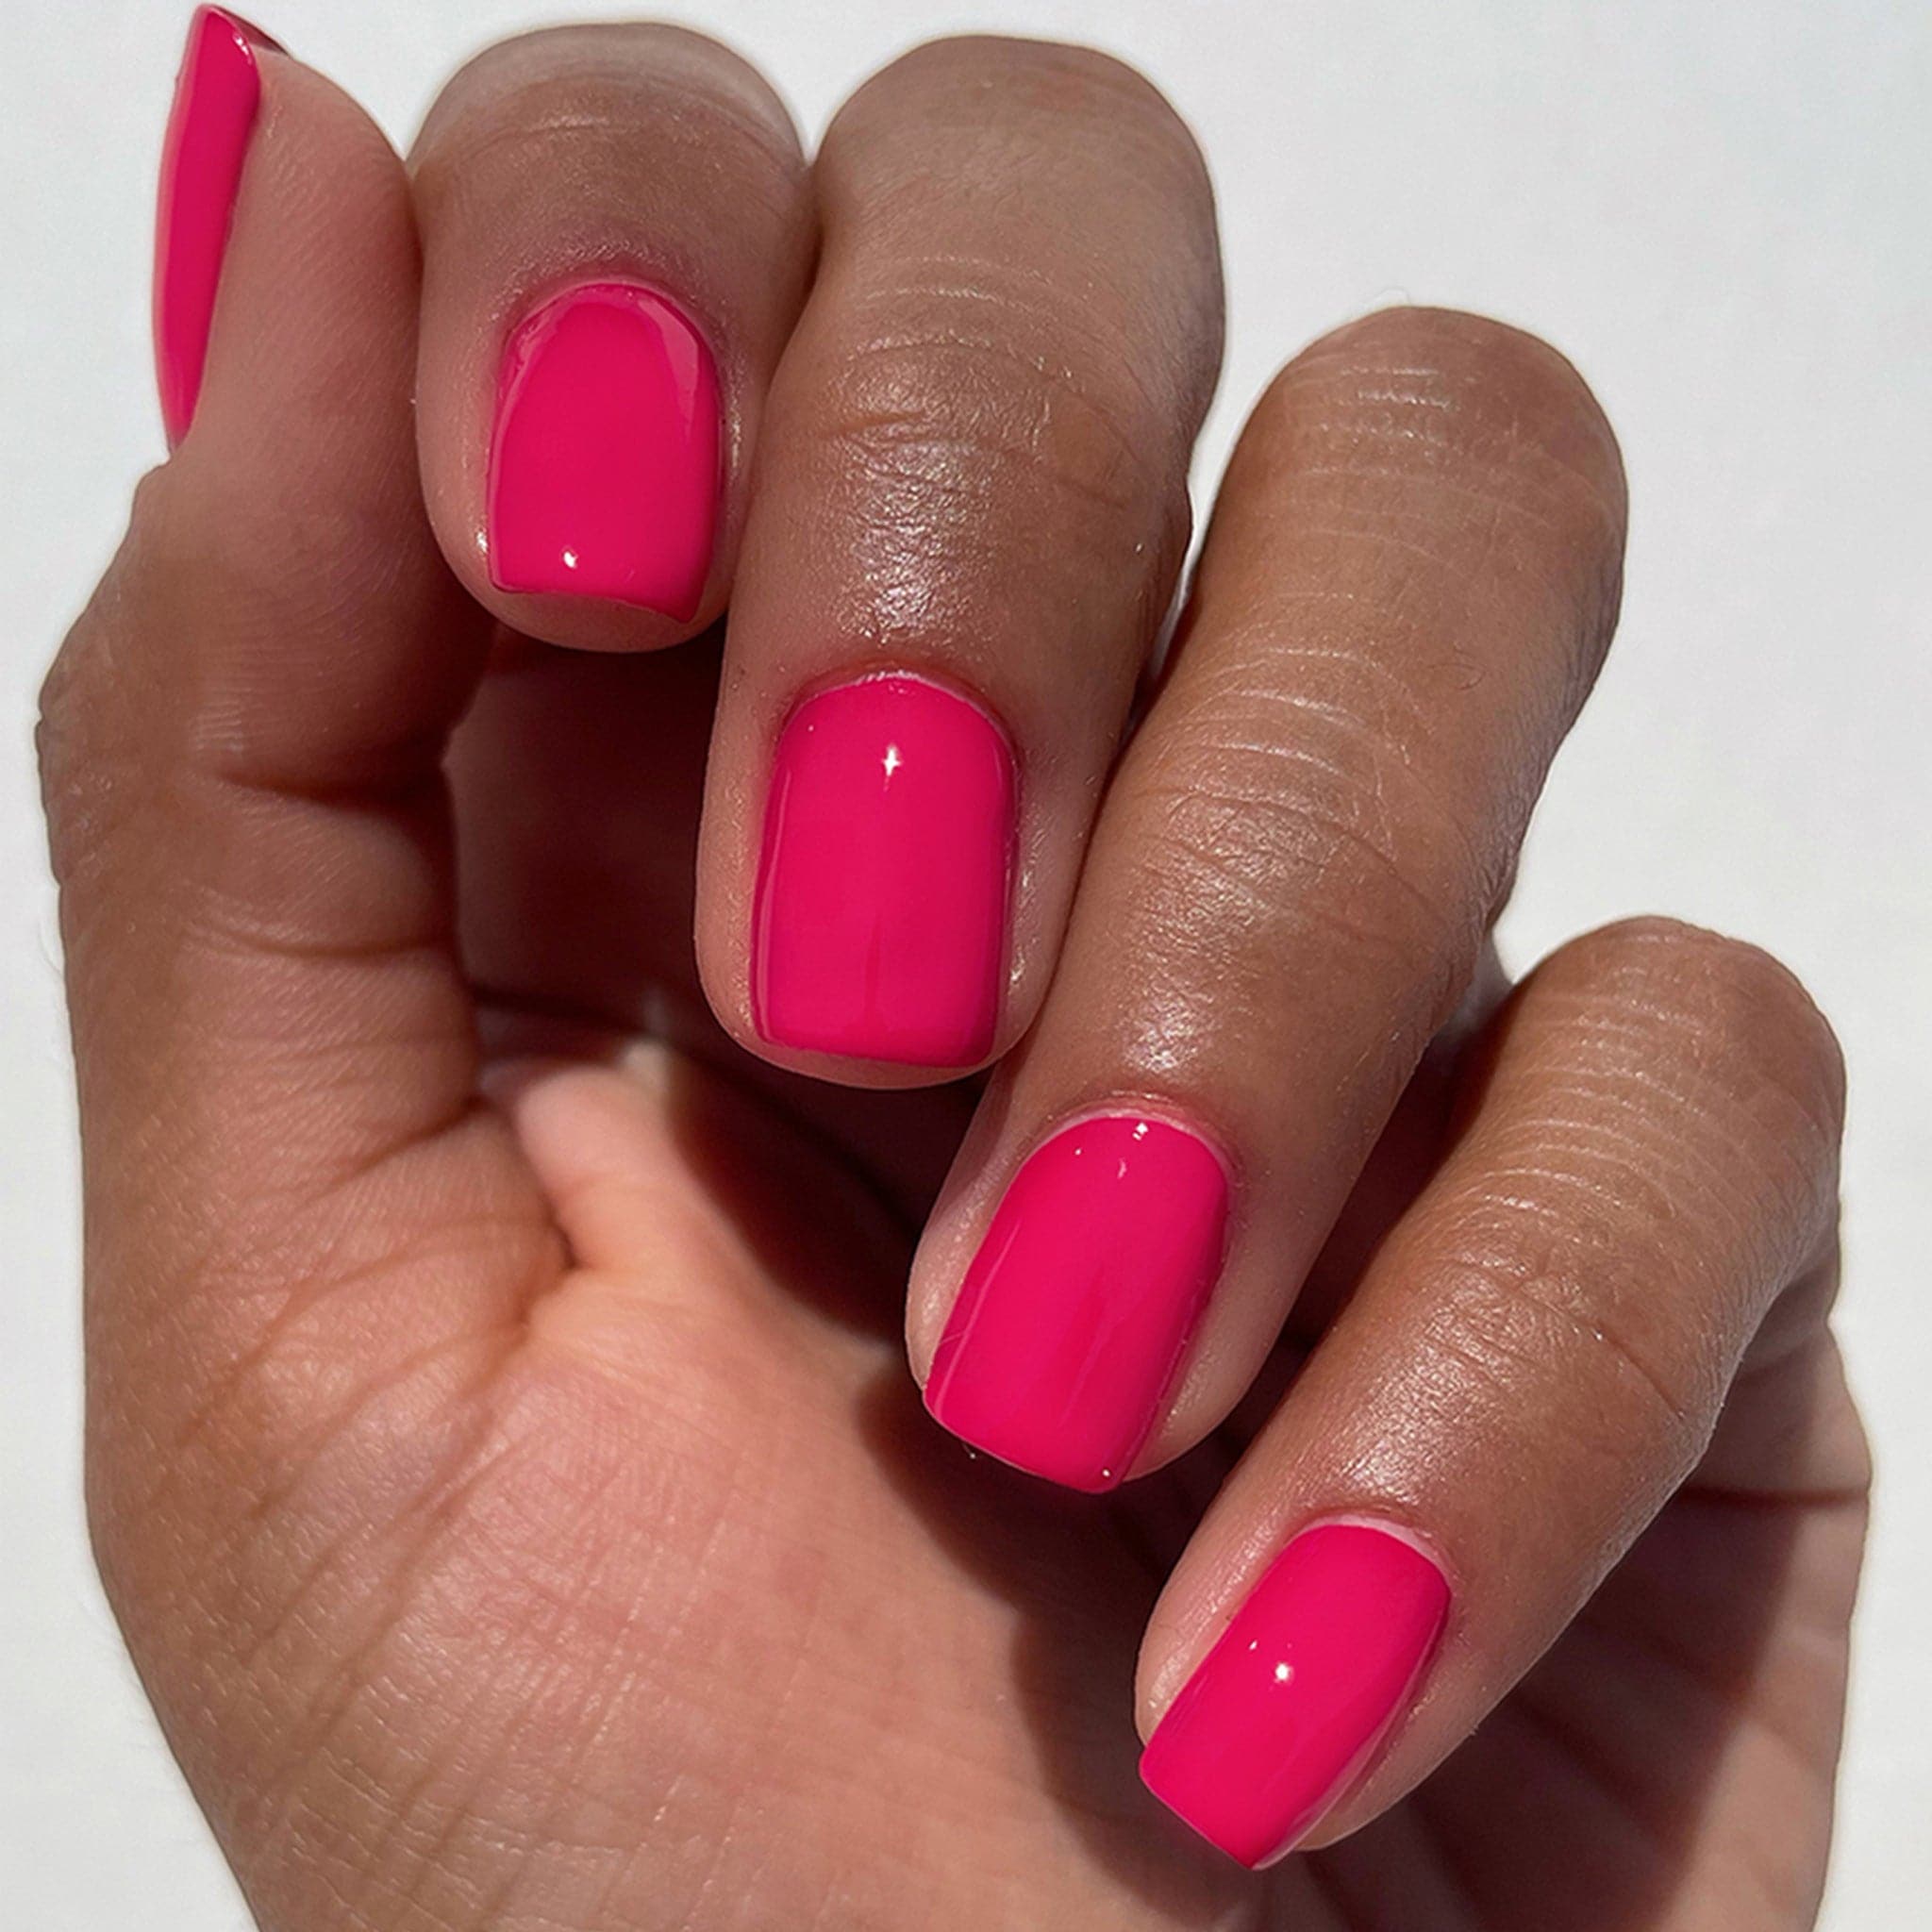 The hot pink nail polish worn on a models nails. 